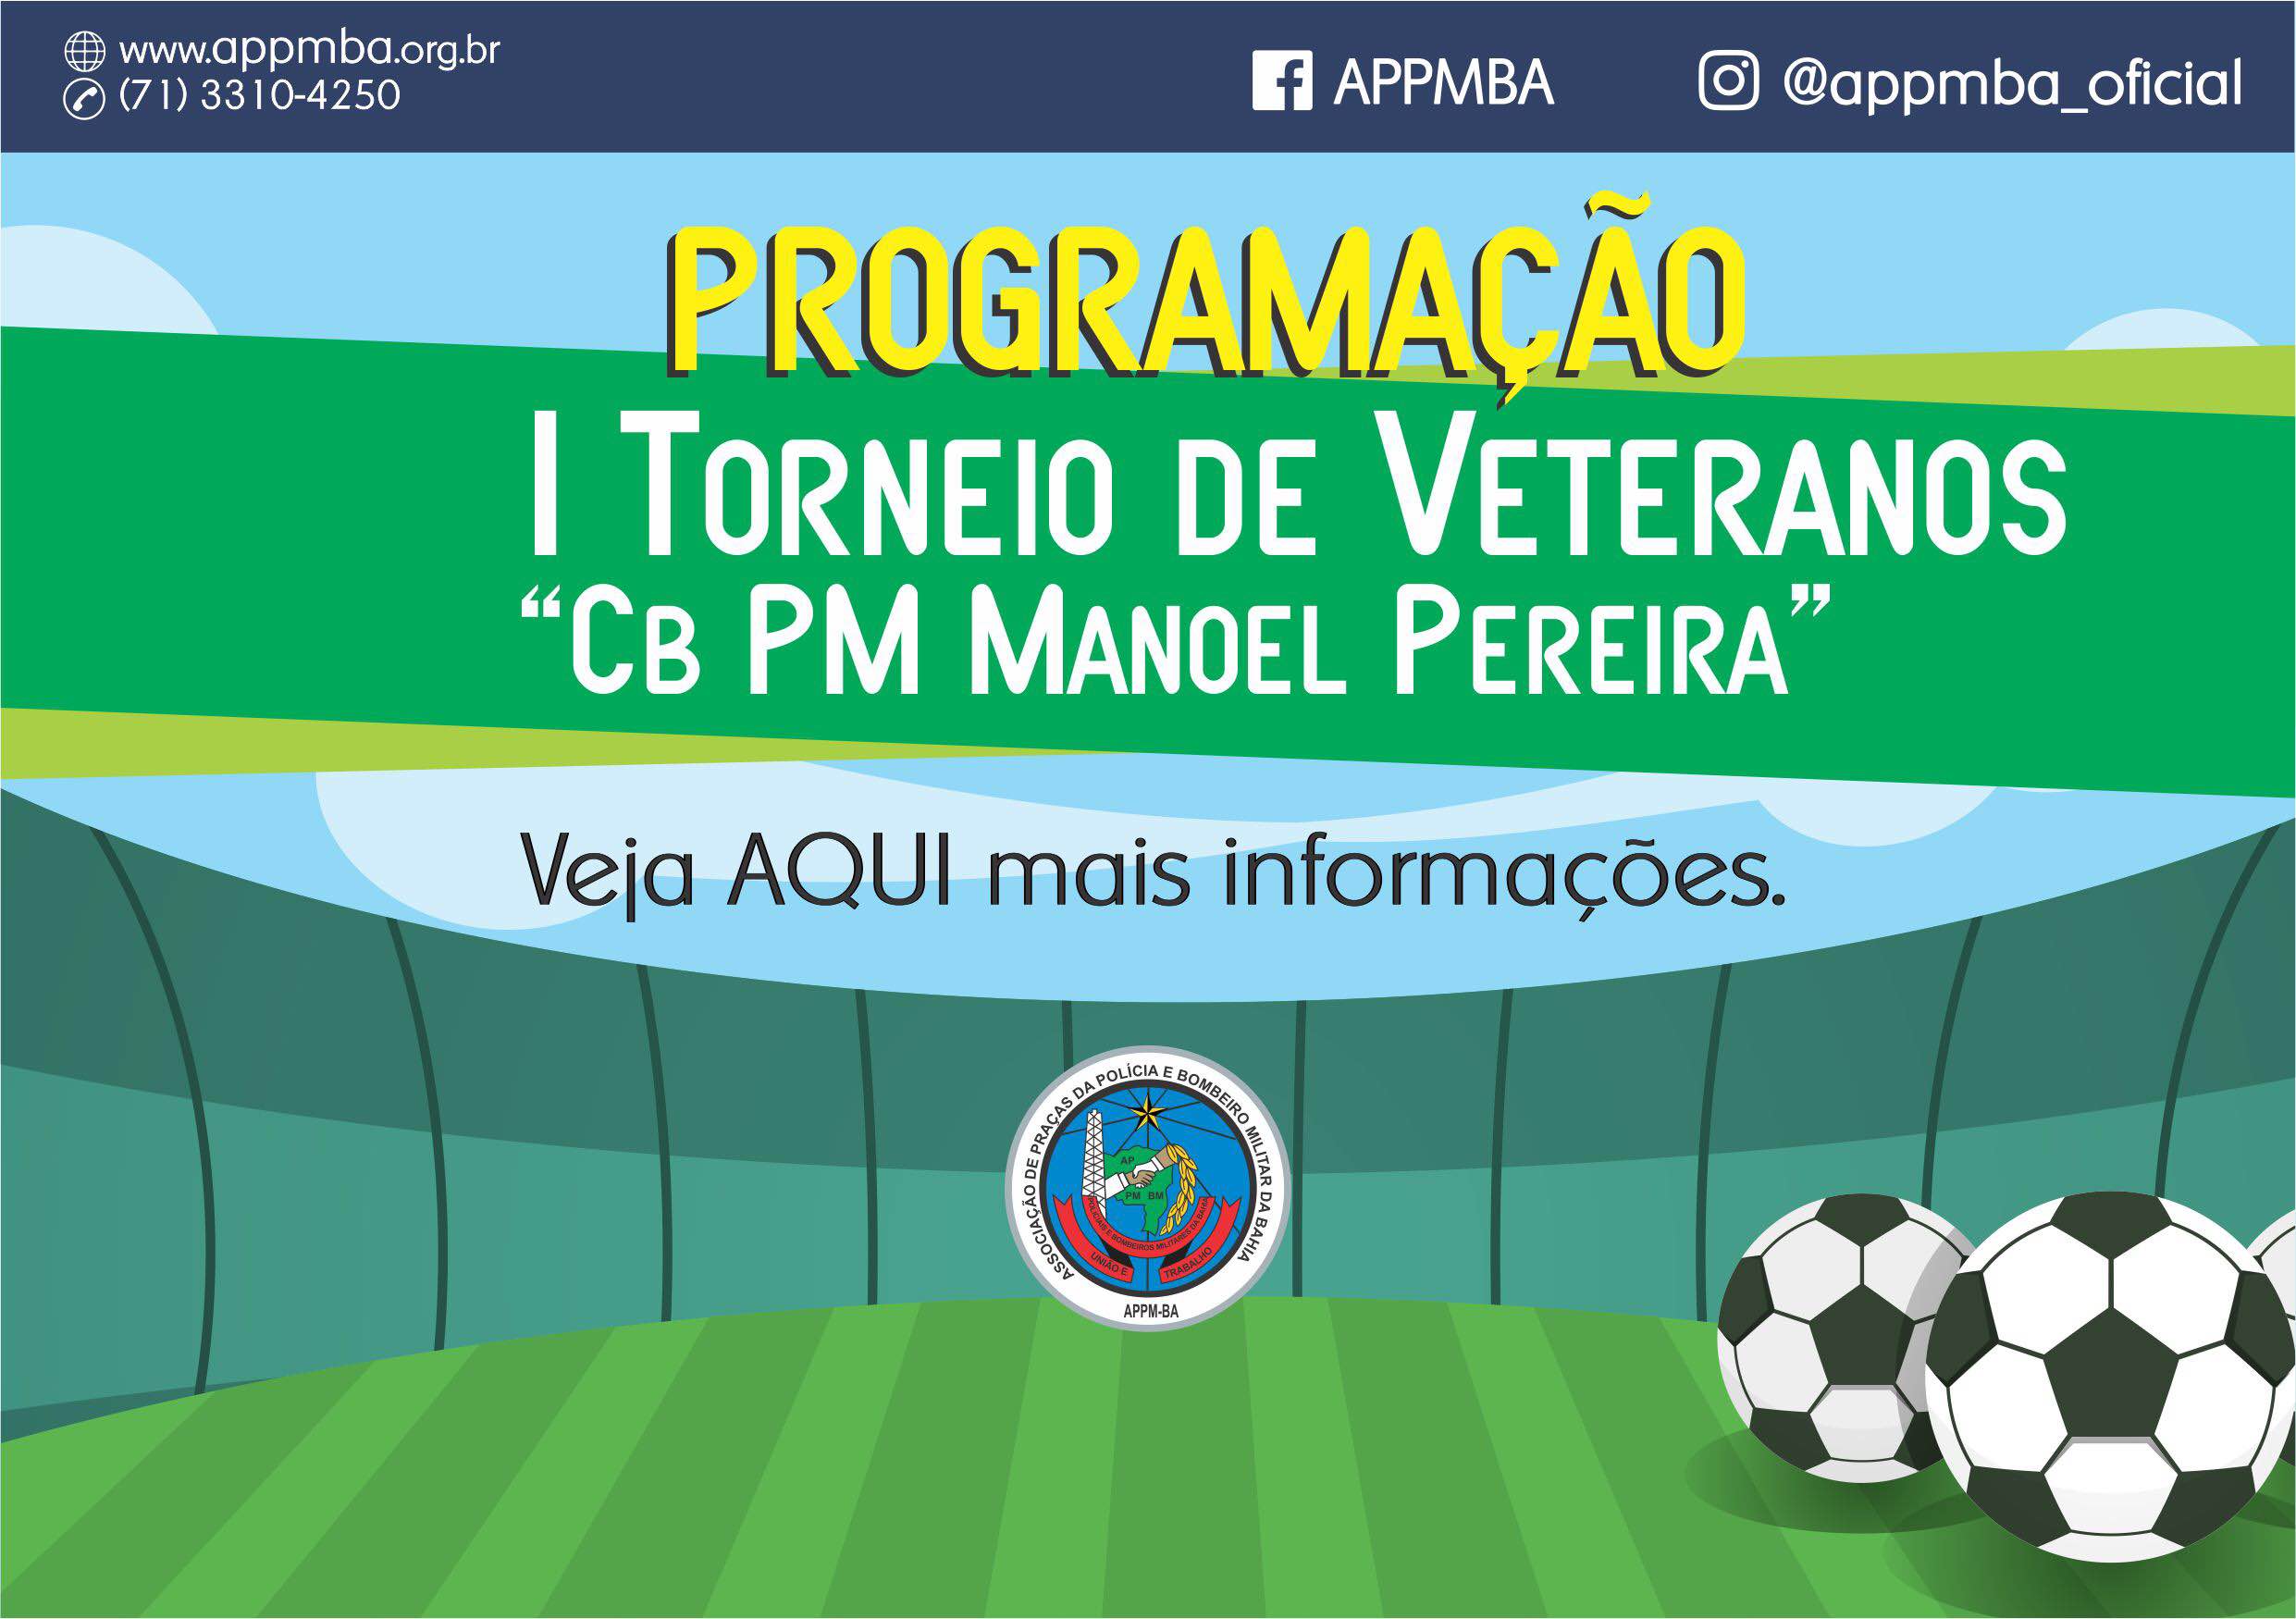 Programação I Torneio de Veteranos Cb PM Manoel Pereira, dias 26 à 28/4